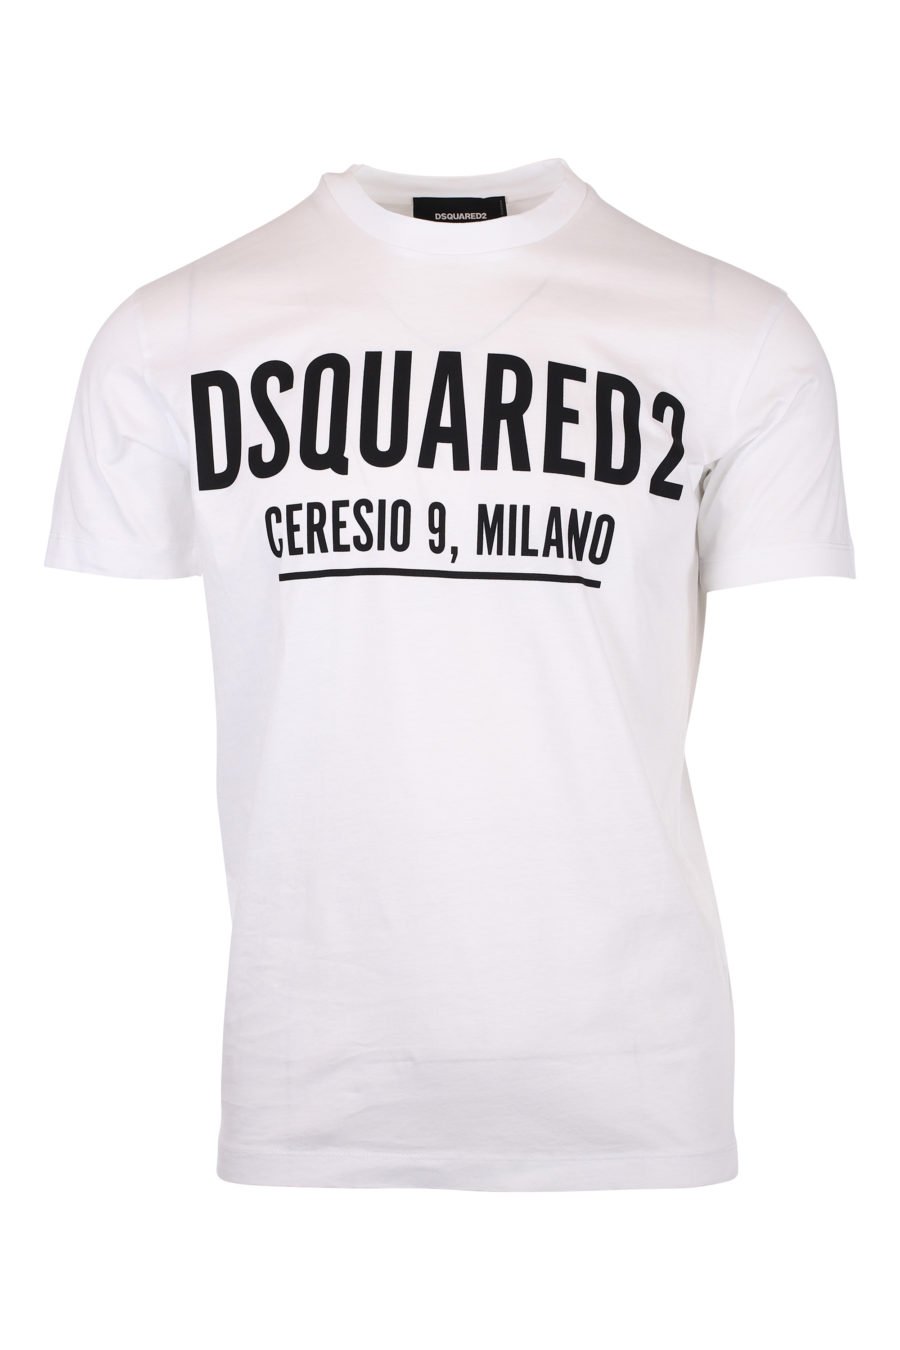 T-shirt weiß mit Logo ceresio 9 - IMG 9774